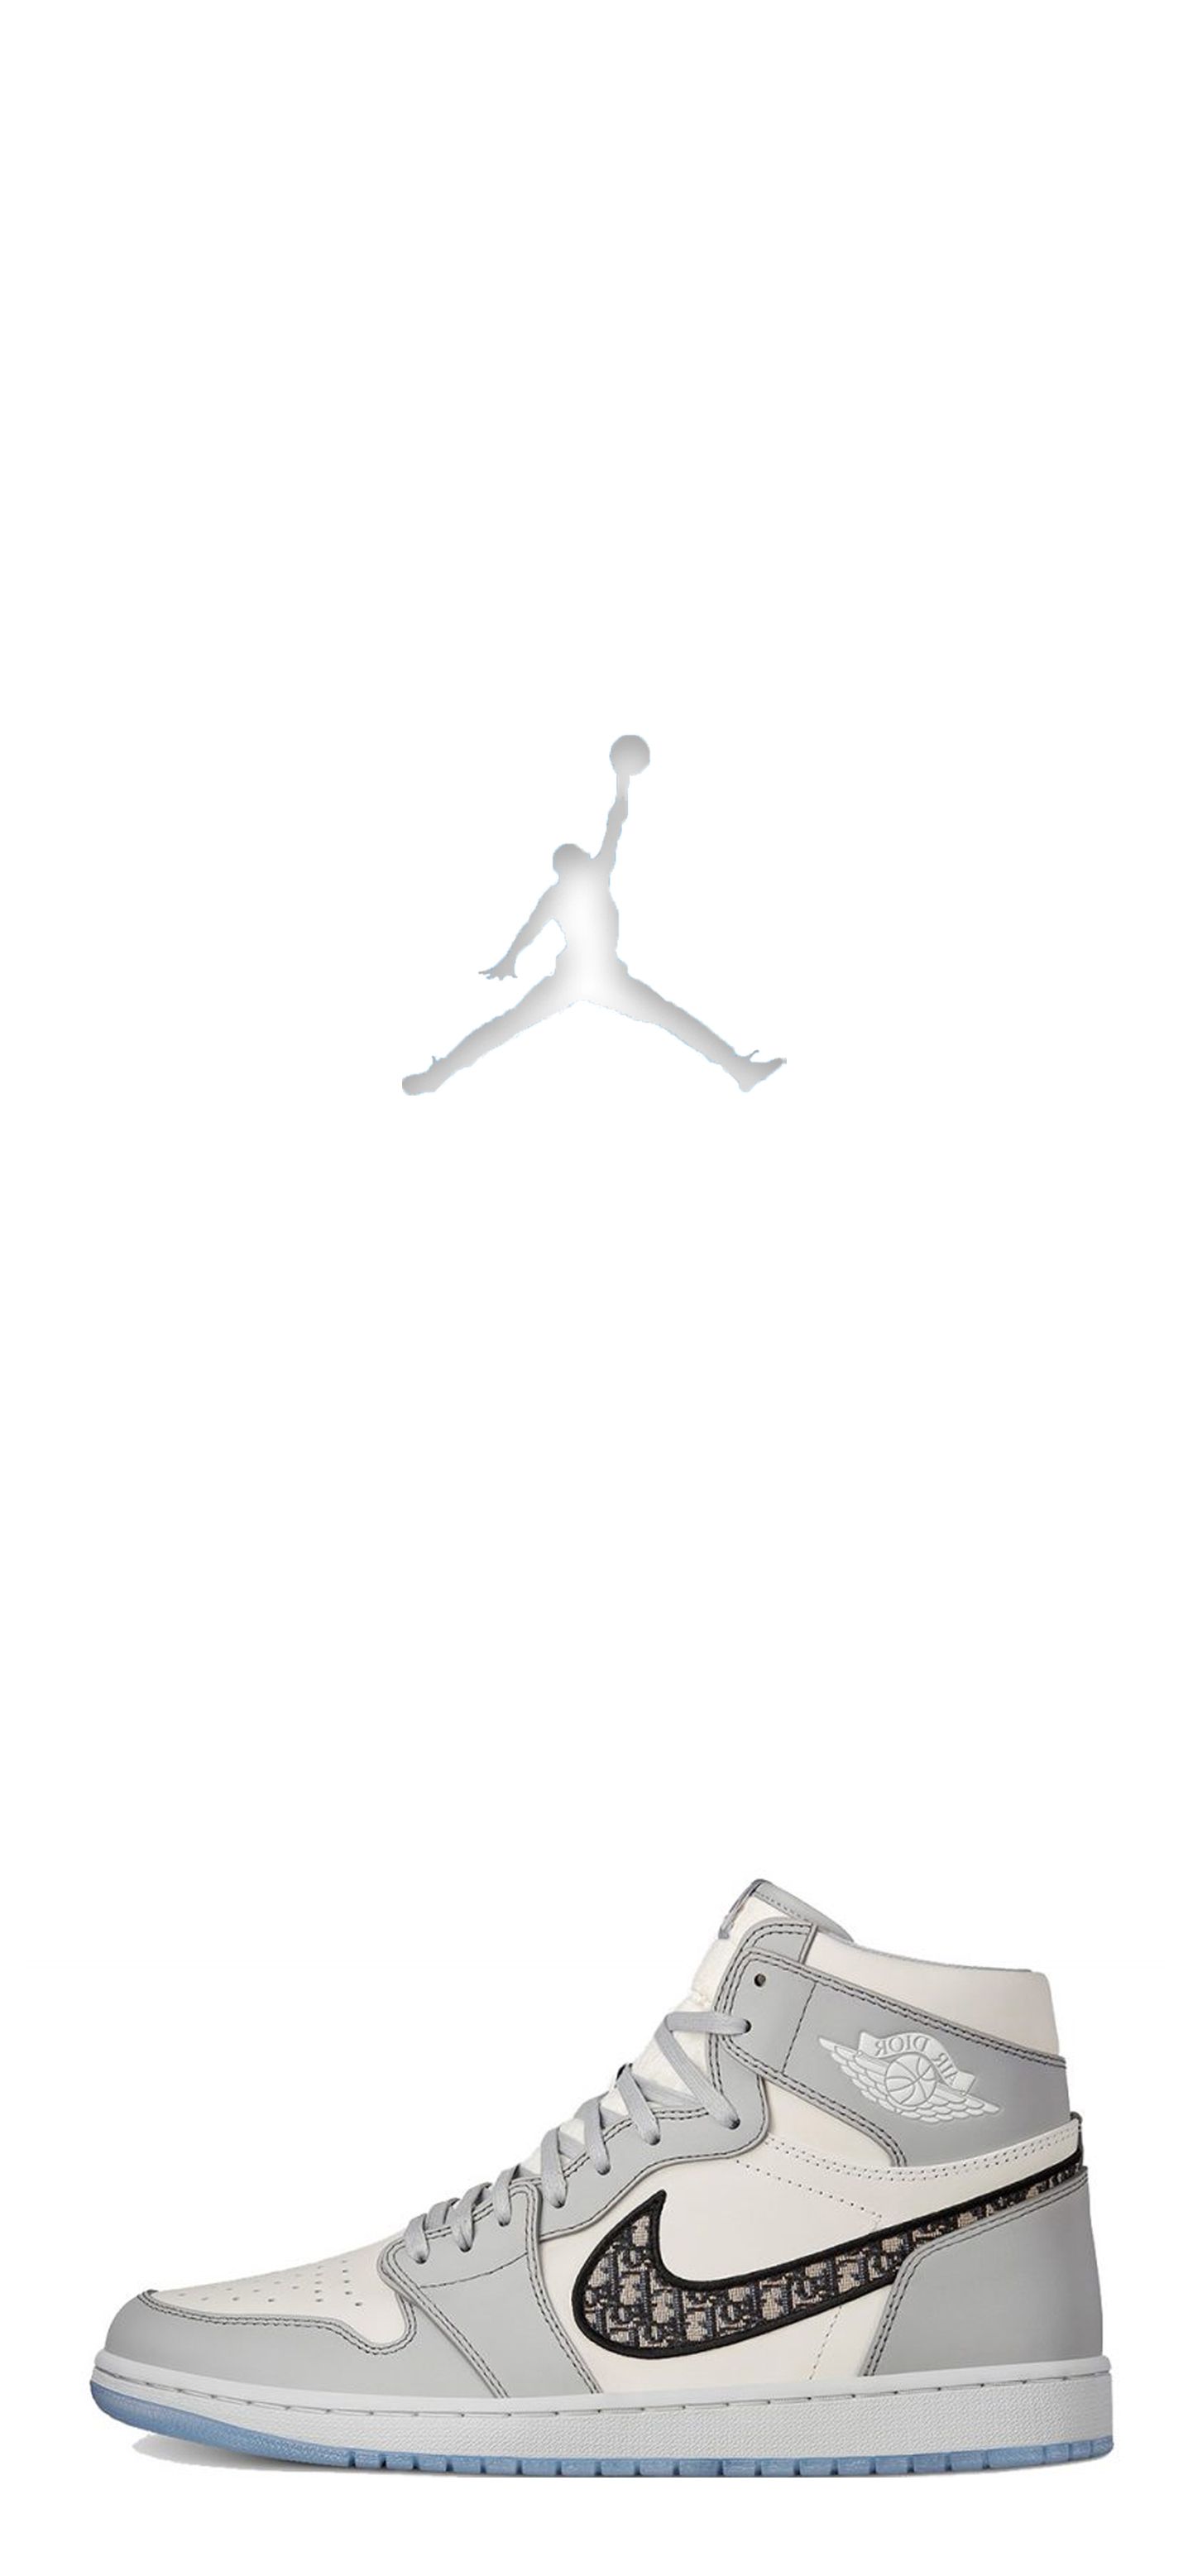 Air Jordan 1 (Dior). Nike air jordan shoes men, Shoes wallpaper, Jordan shoes retro